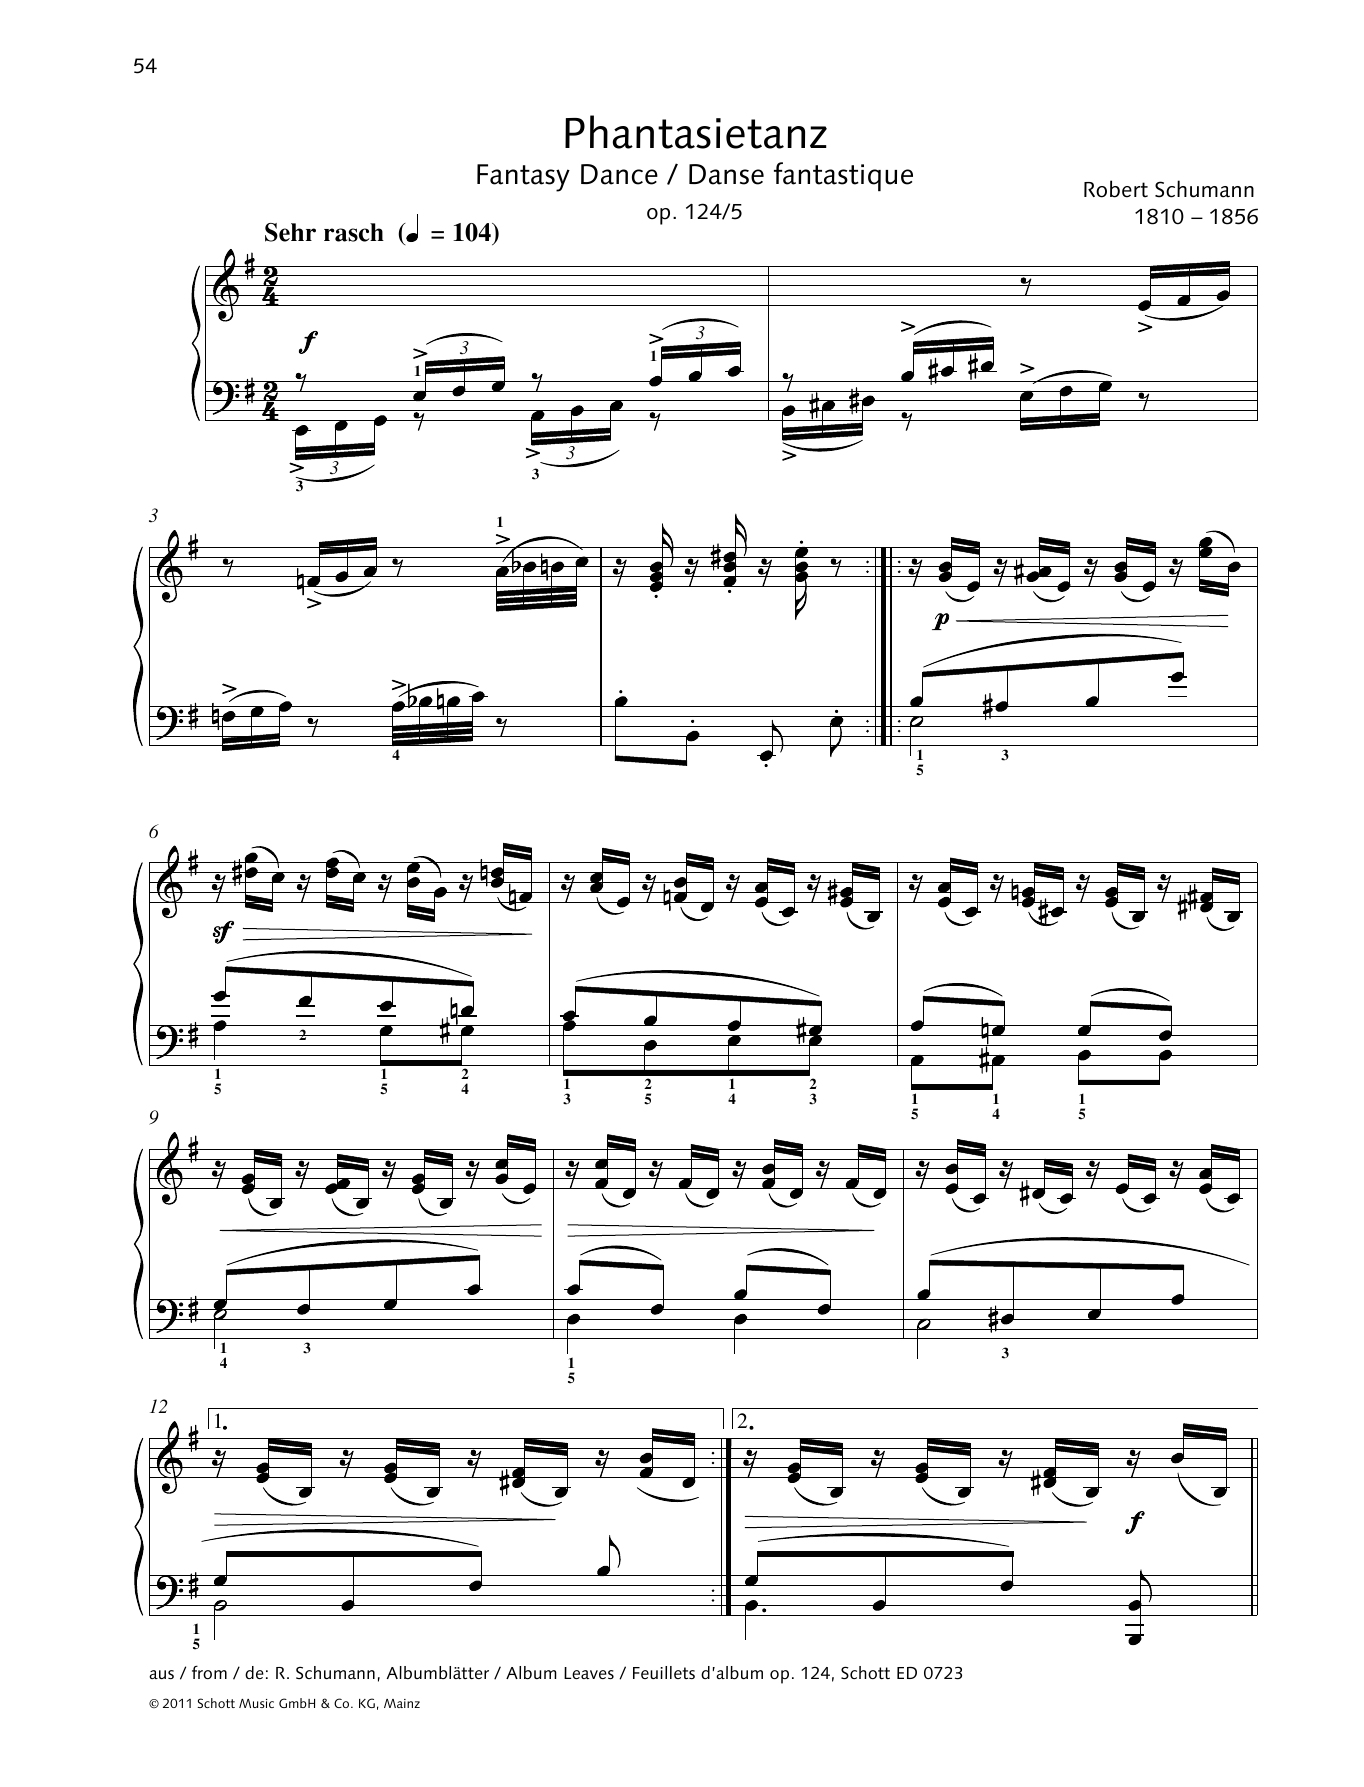 Download Robert Schumann Fantasy Dance Sheet Music